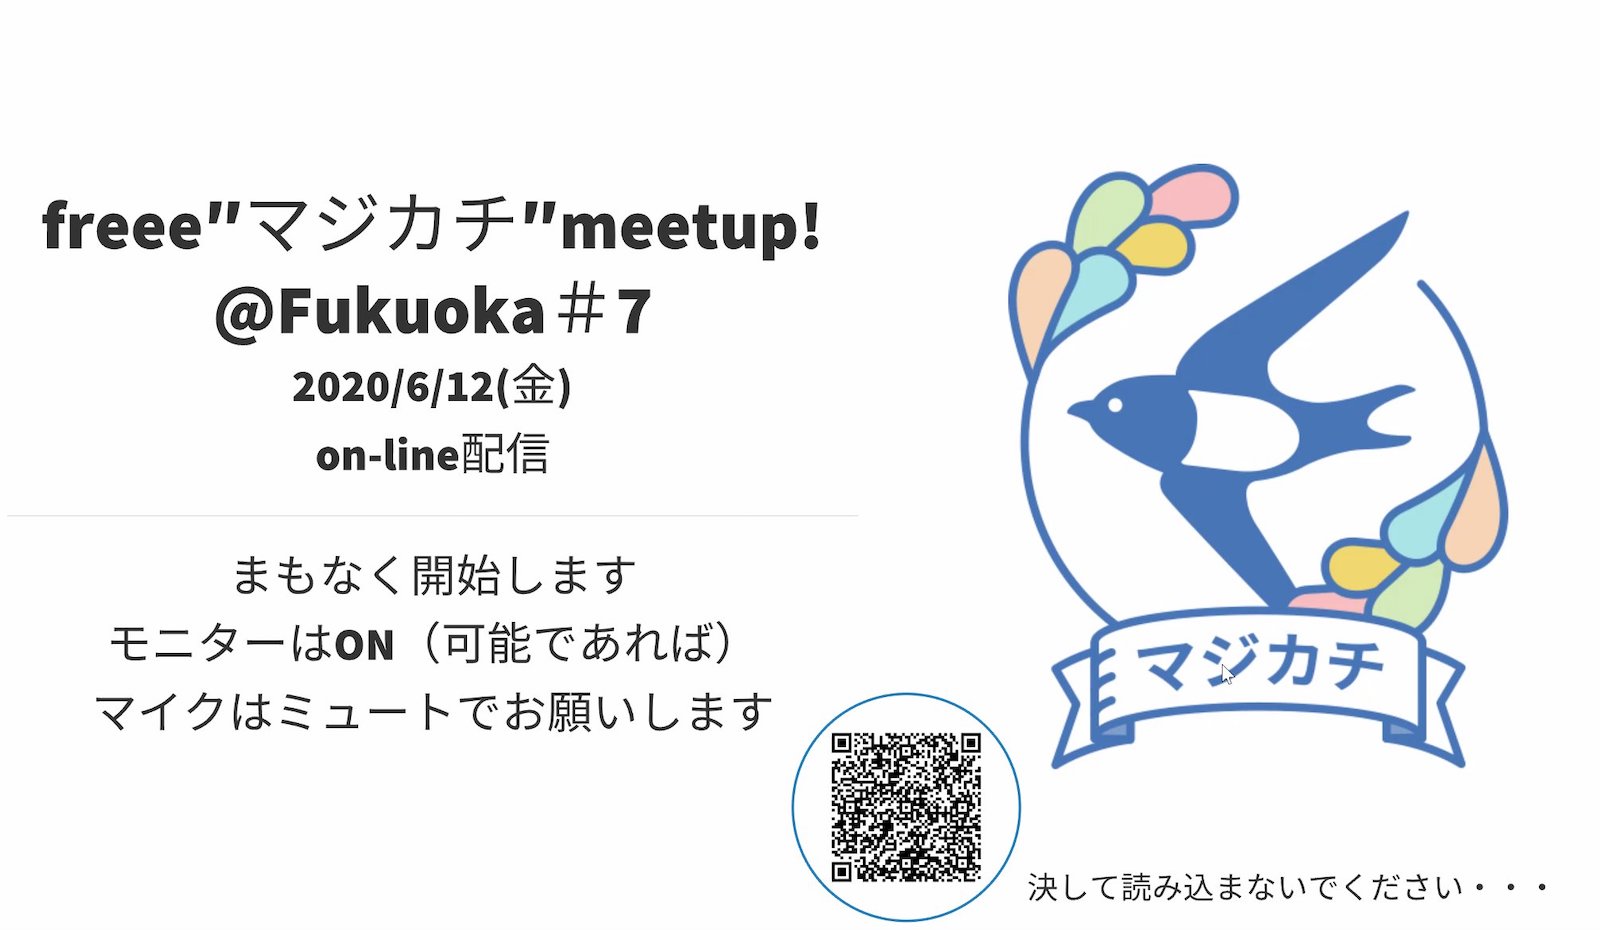 【画像】freee マジカチ meetup! @福岡#7の画像